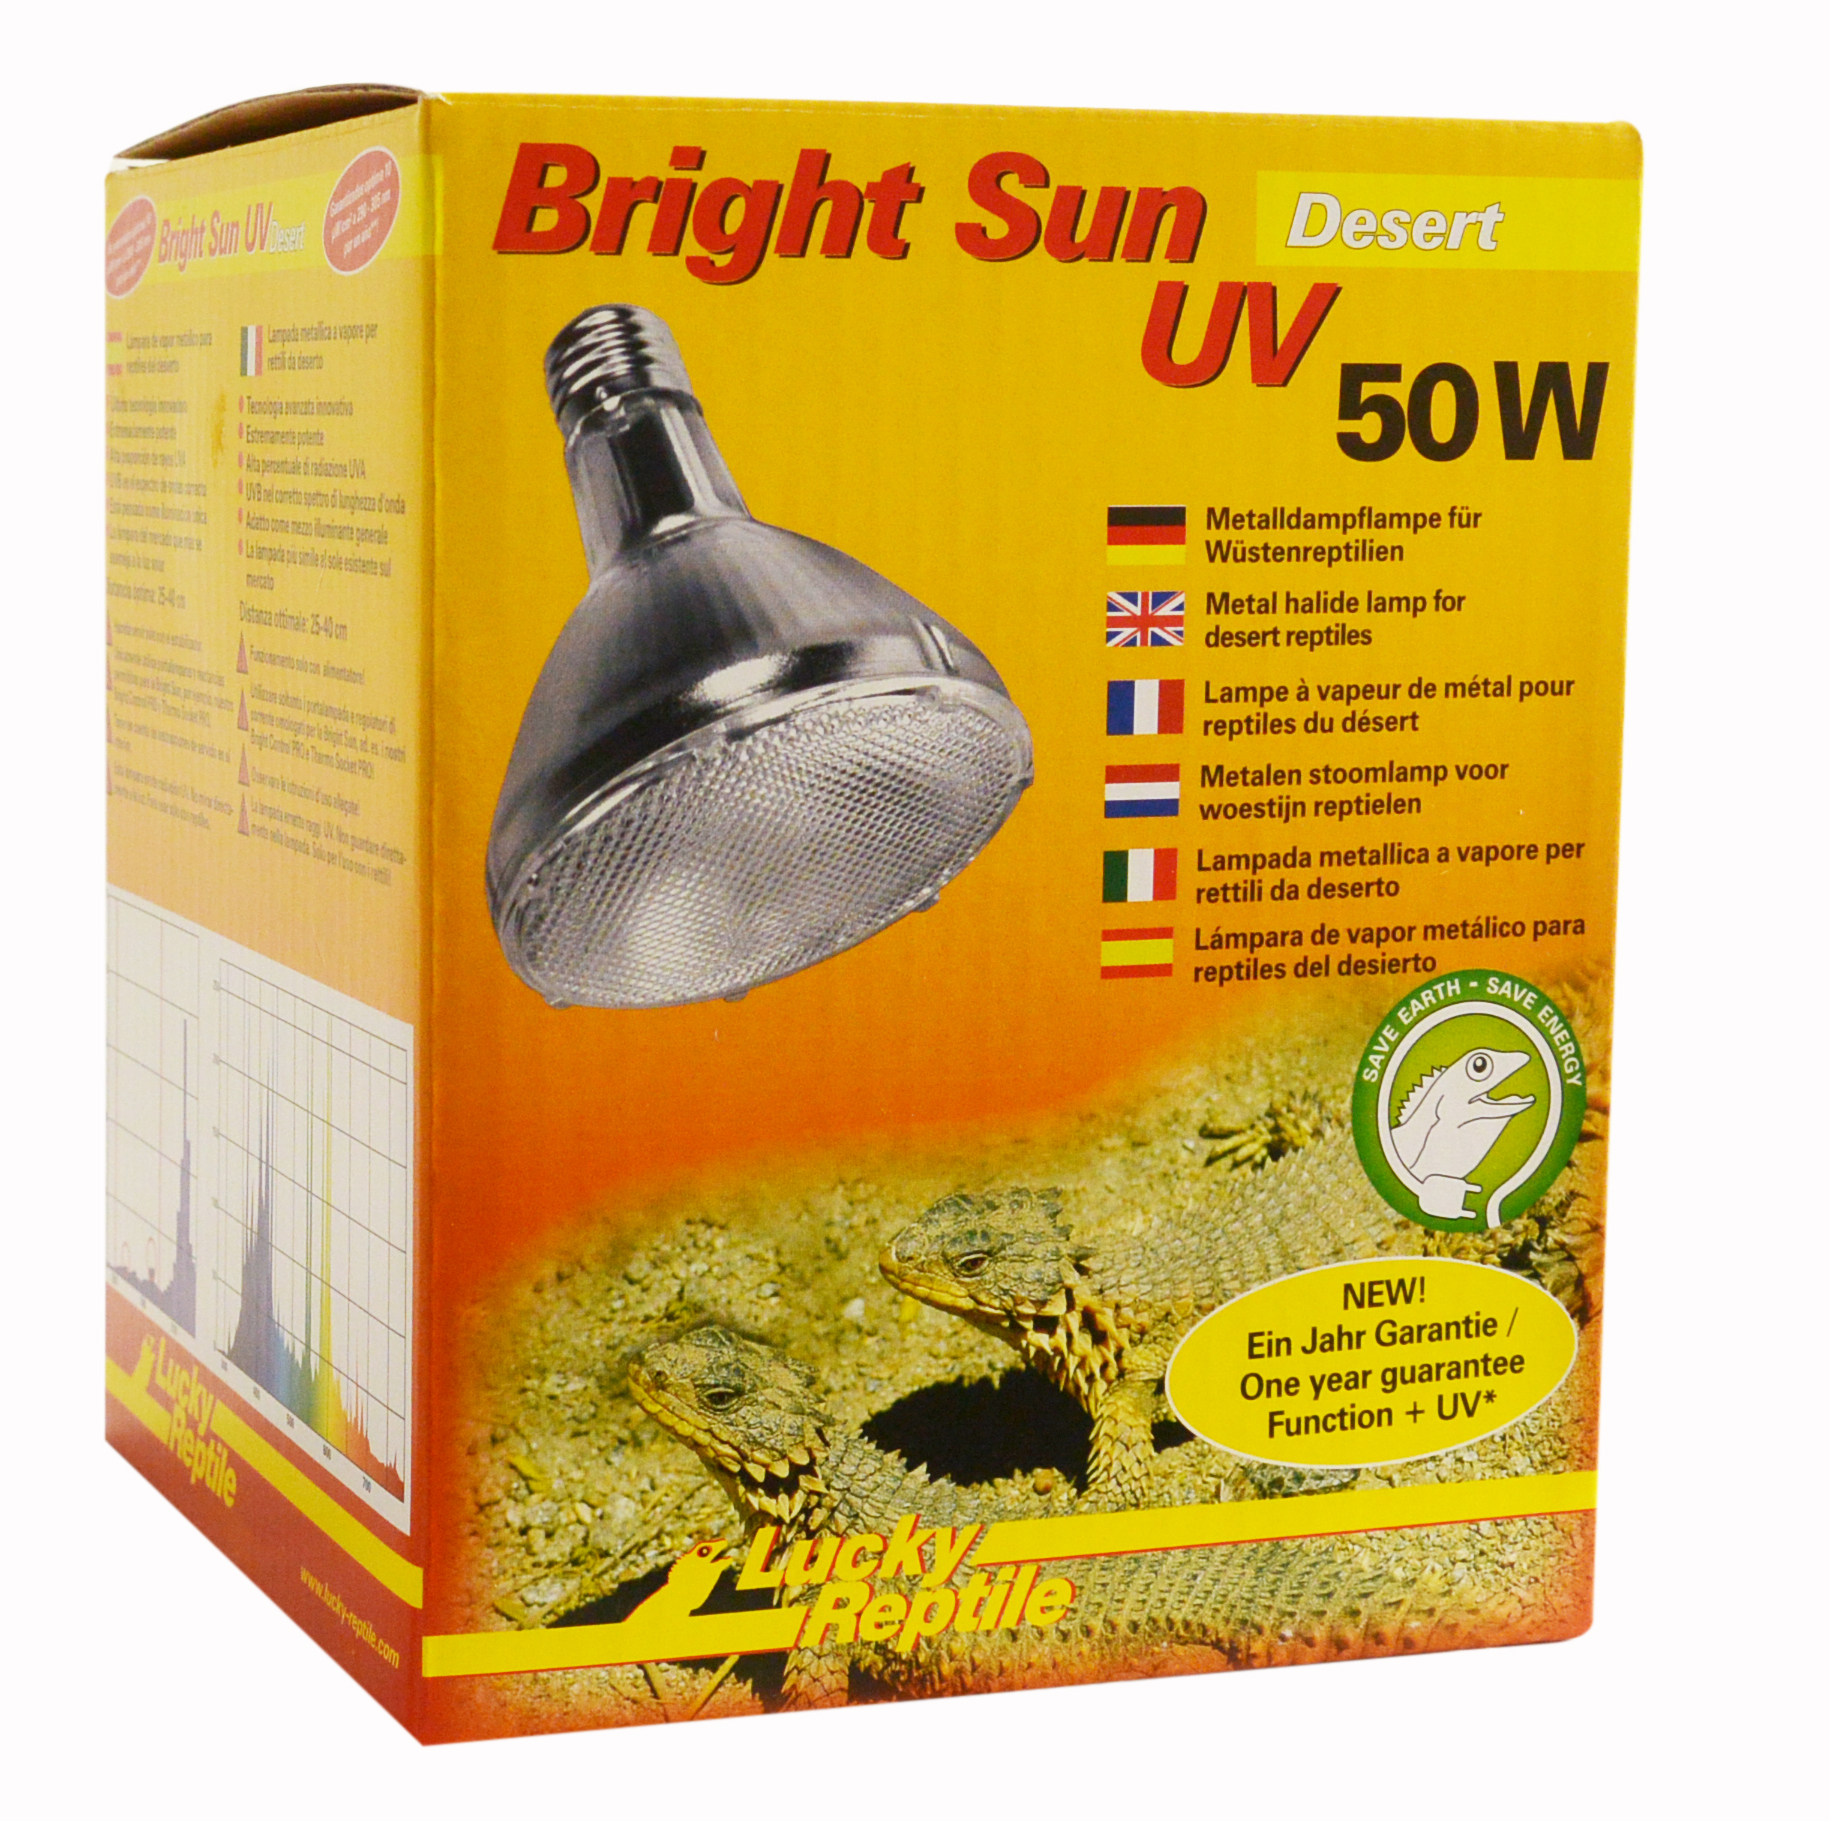 LUCKY REPTILE Bright Sun UV Desert 50W BSD-50